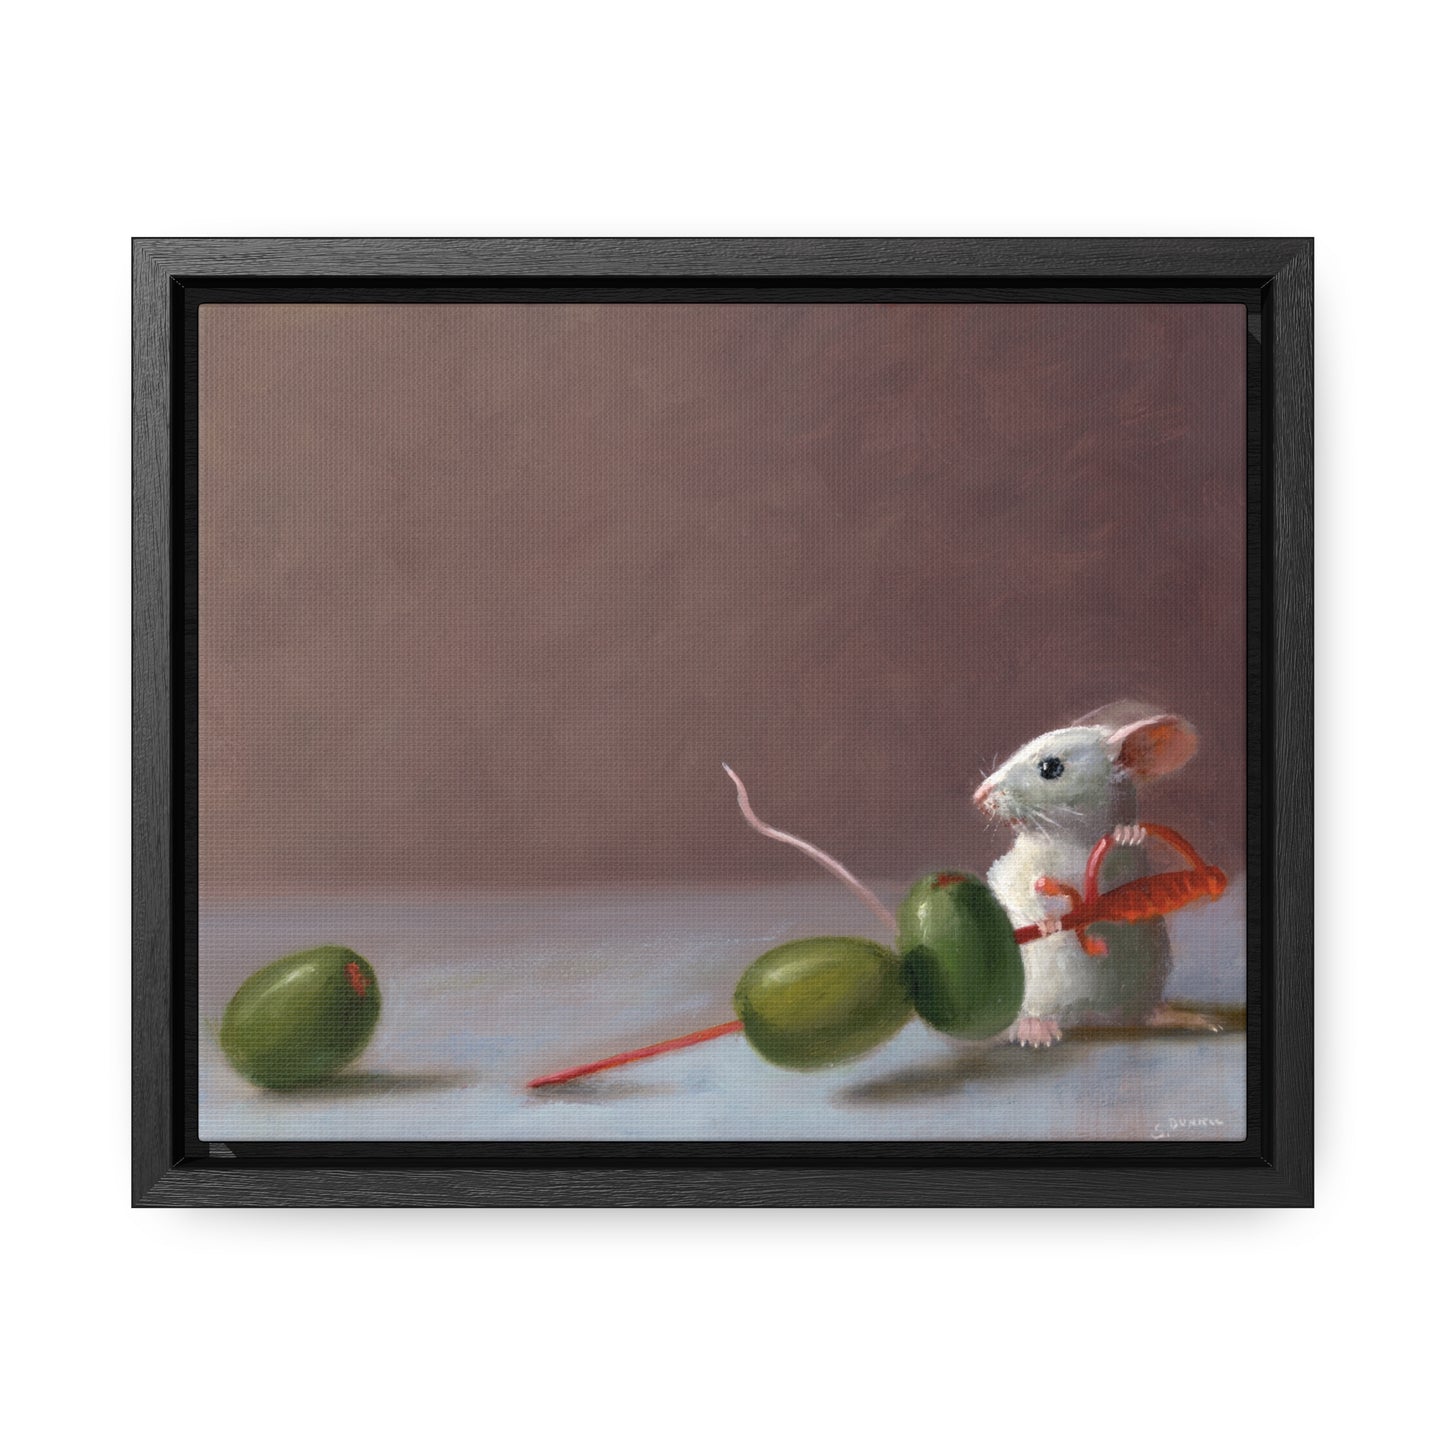 Stuart Dunkel: "Olive Catcher" - Framed Canvas Reproduction